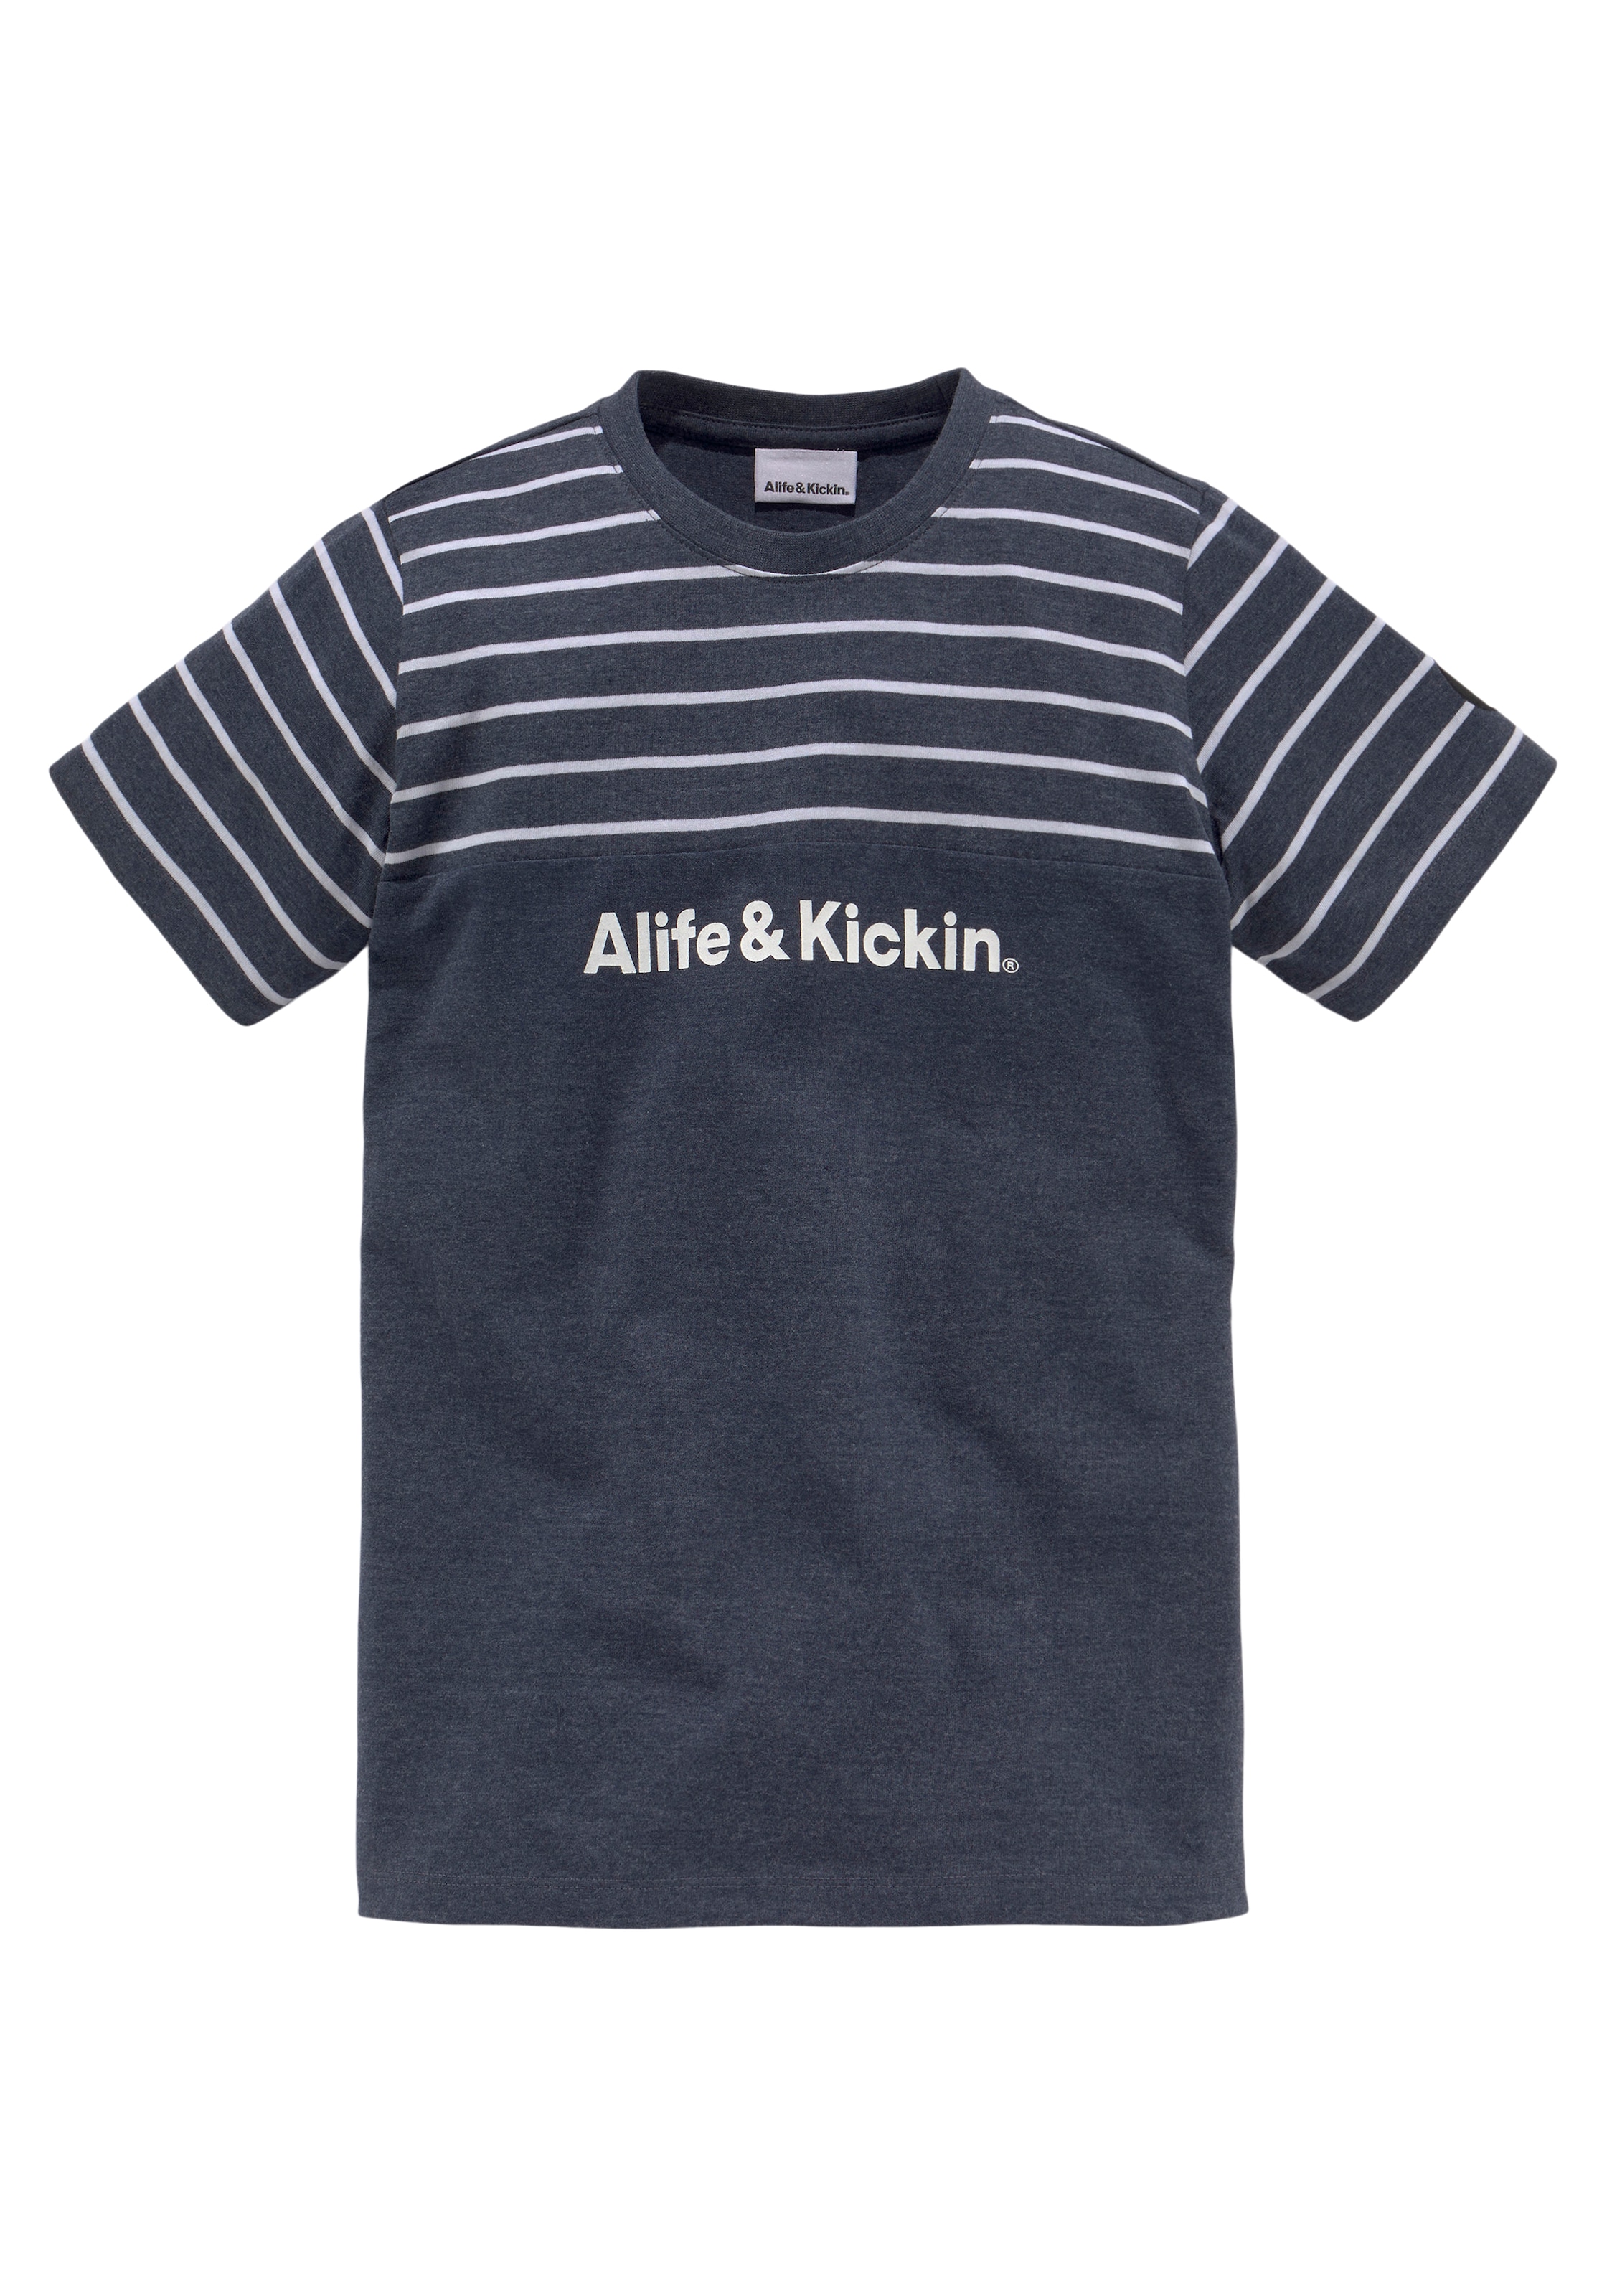 garngefärbten melierter Kickin »Colorblocking«, NEUE Ringel, in & T-Shirt Qualität Alife MARKE! bei und